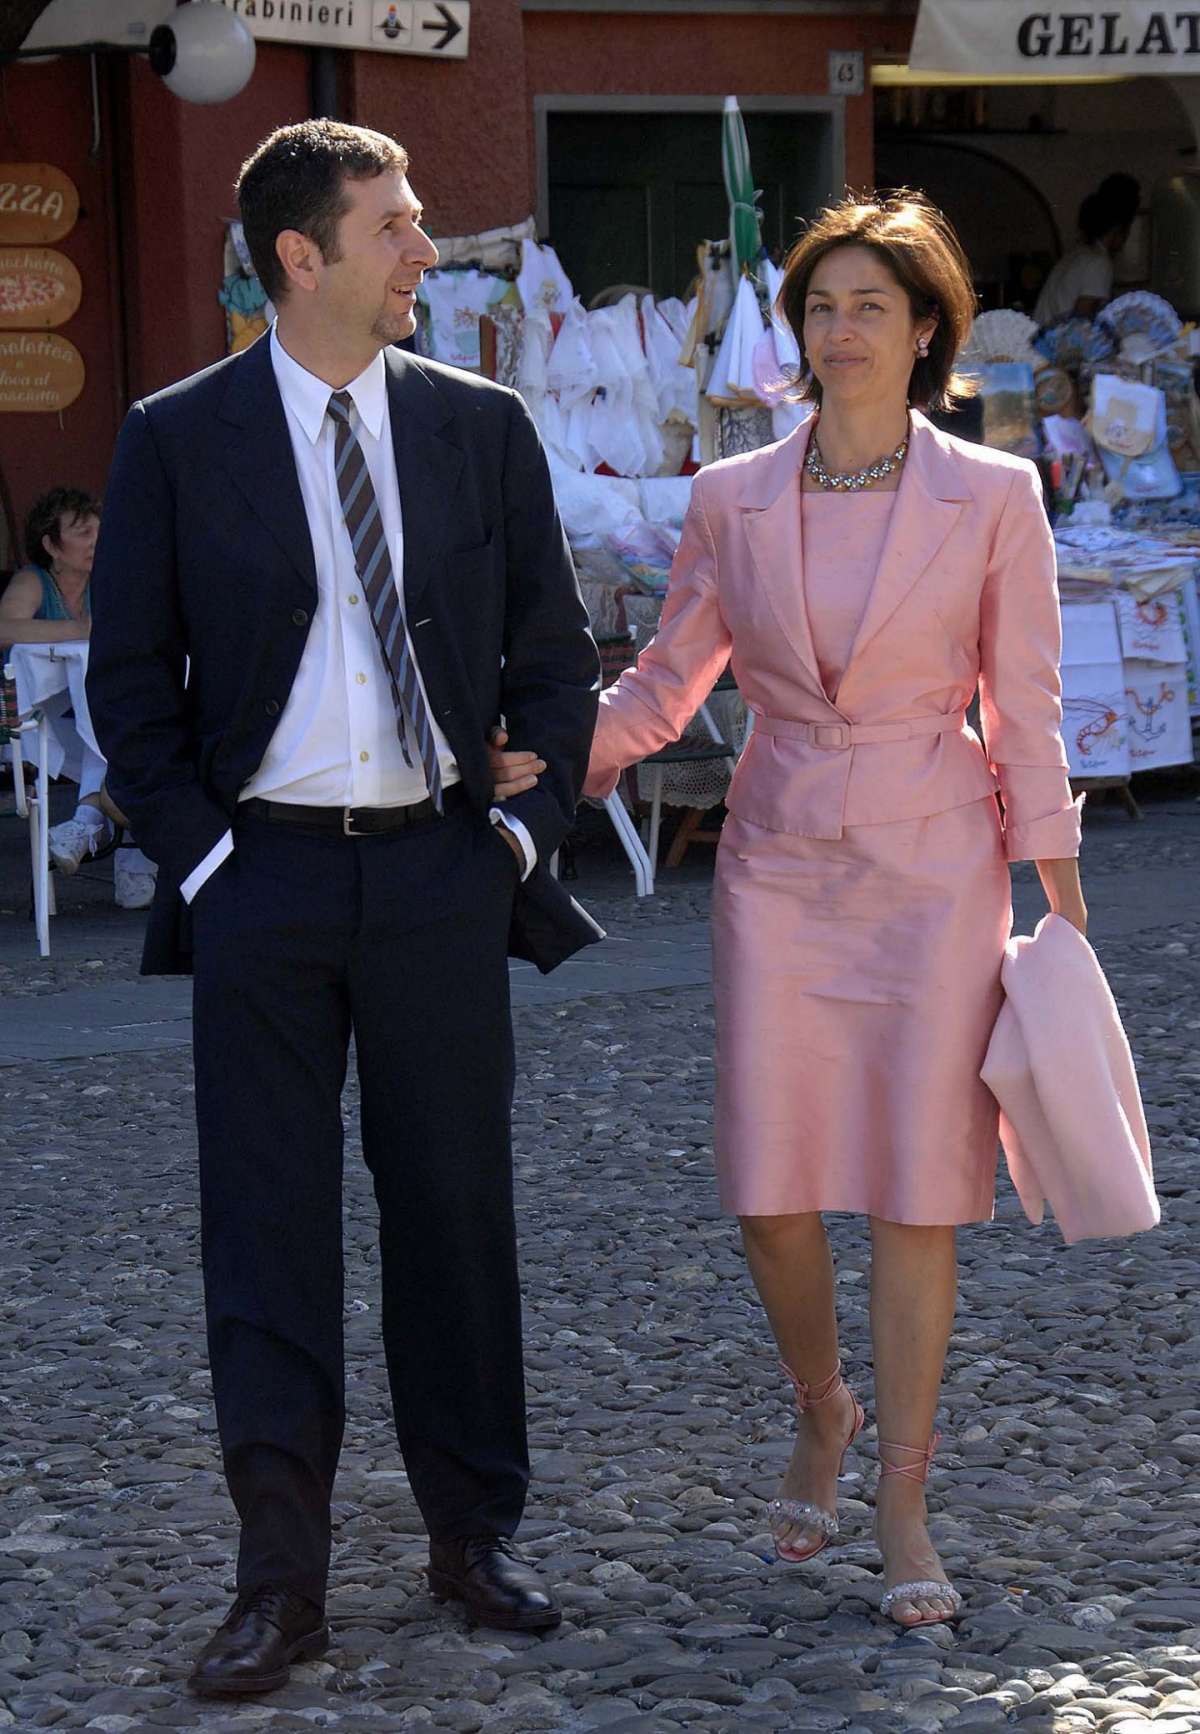 Fabio Fazio e la moglie durante una passeggiata